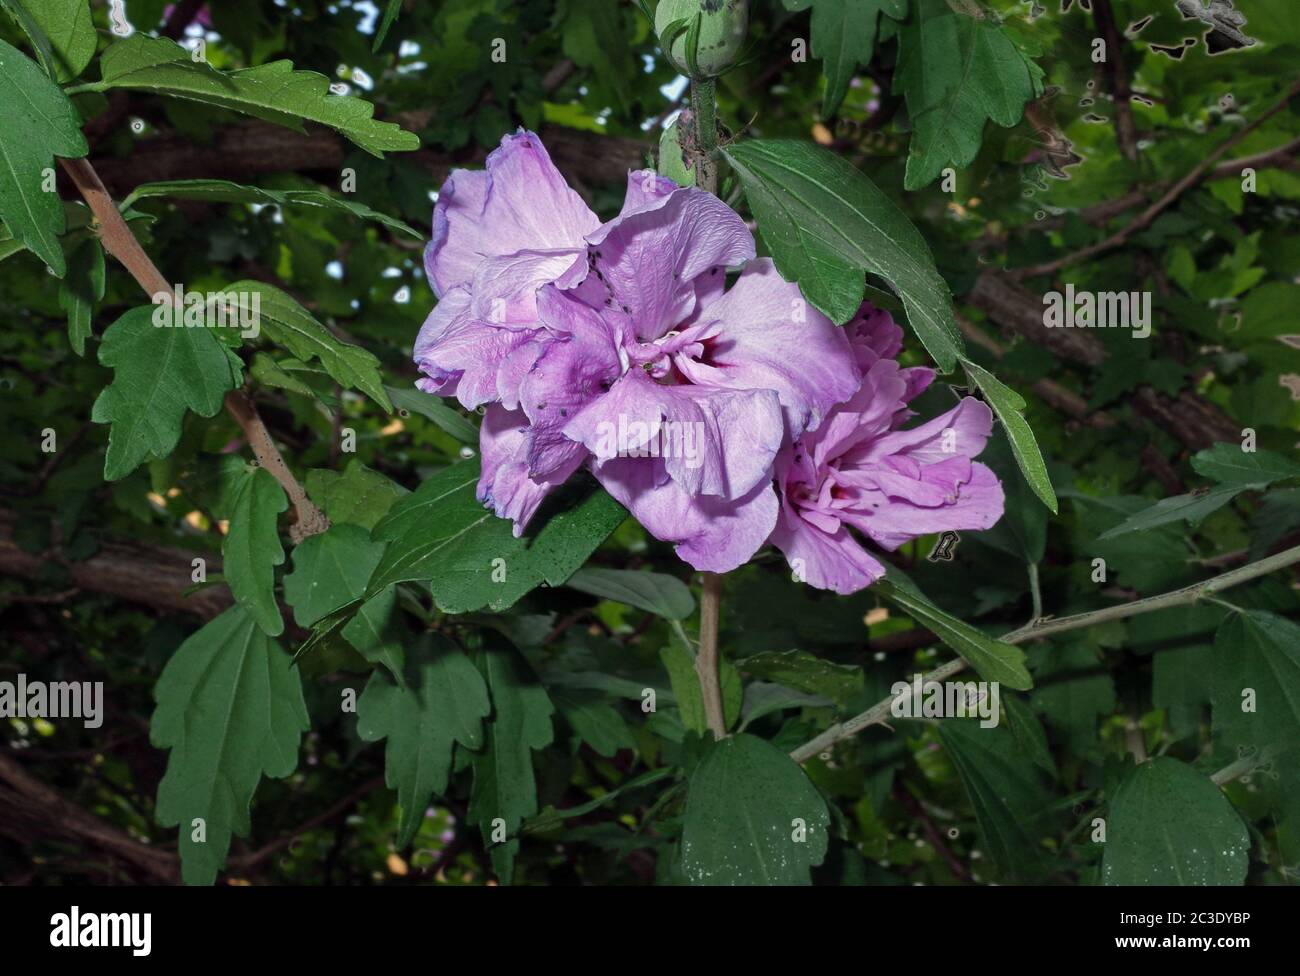 Hibiscus mutabilis flowering close-up Stock Photo